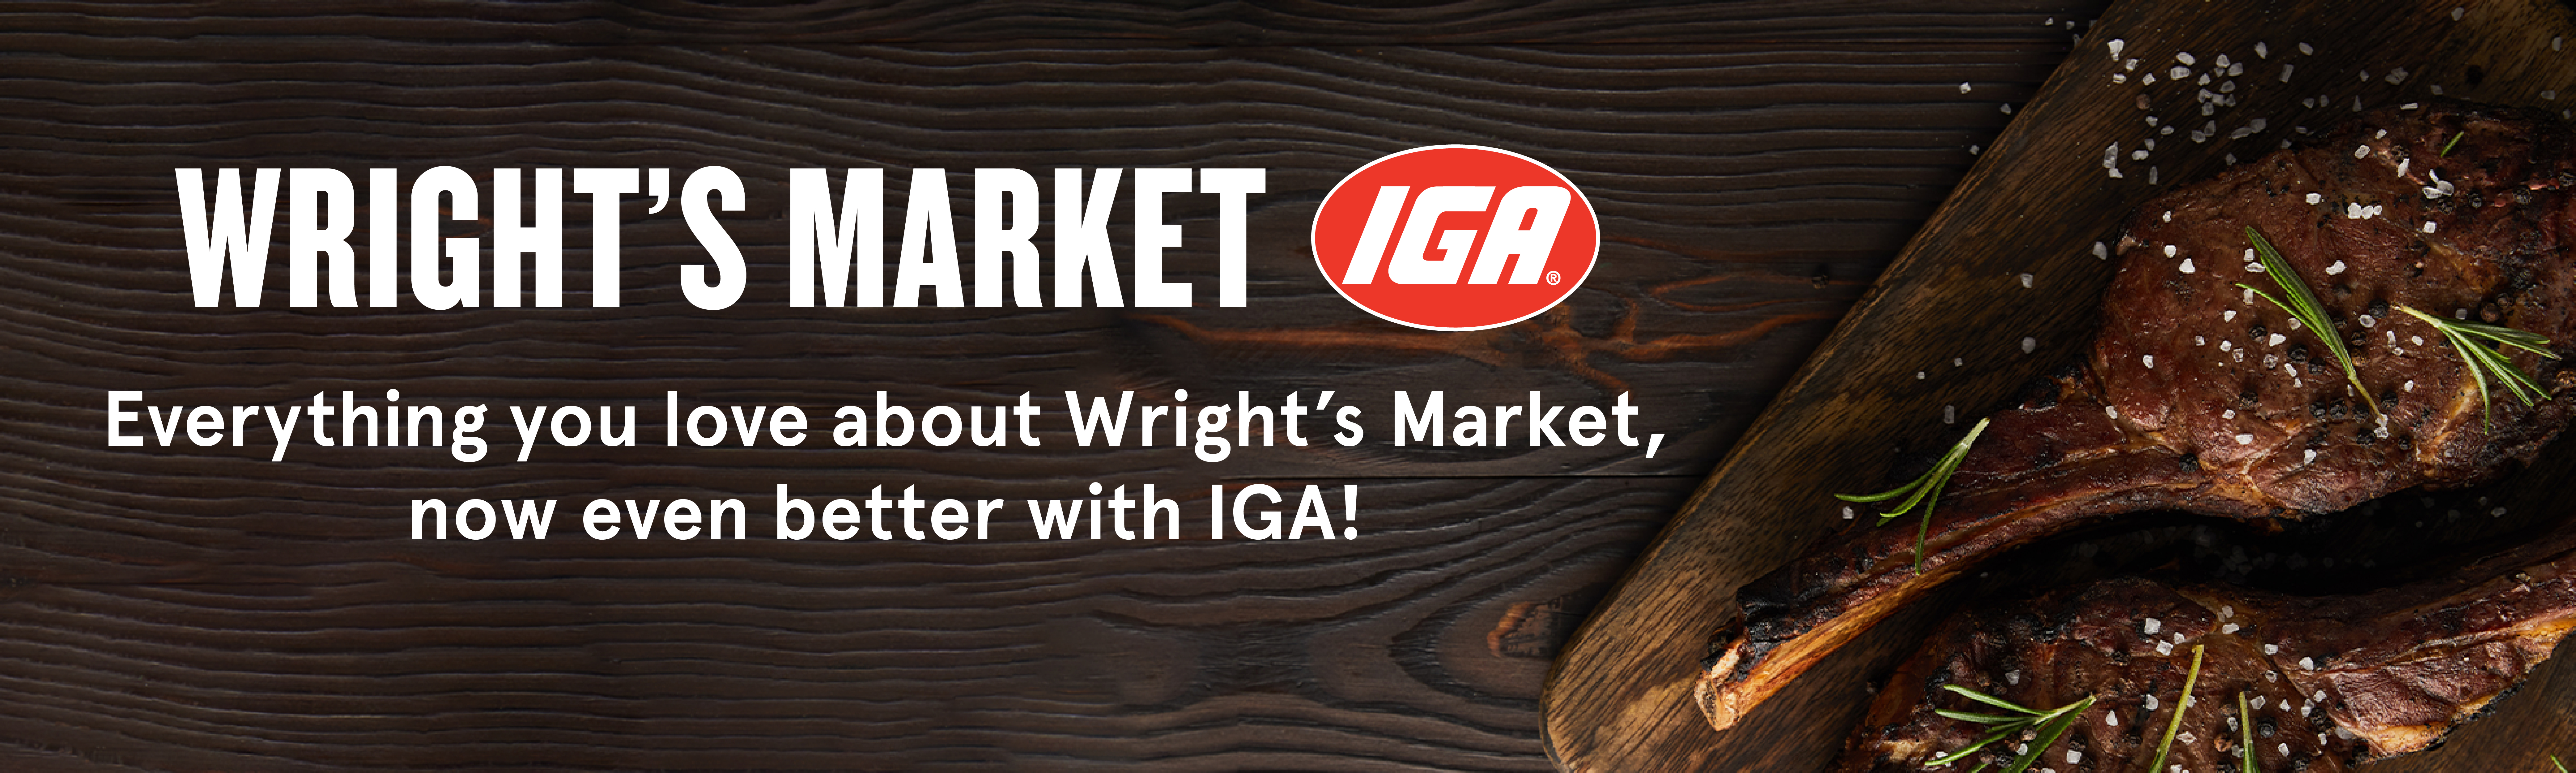 Image of Wright's Market logo on wood grain background